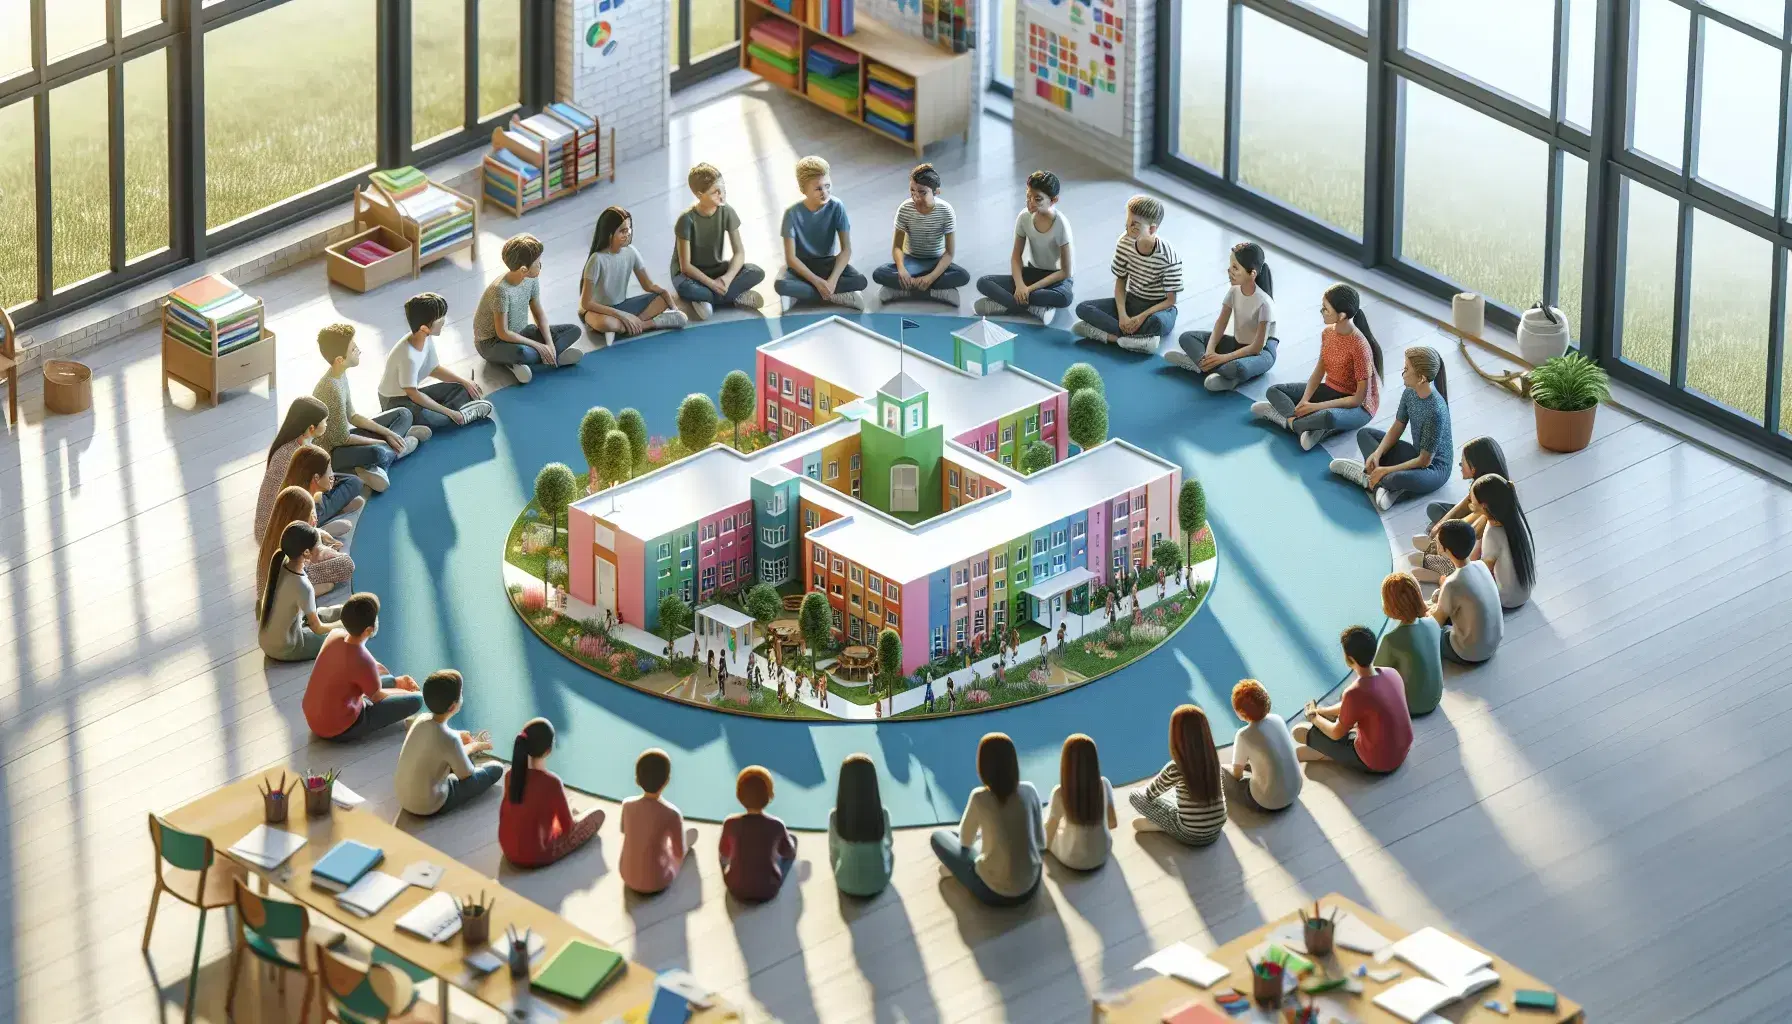 Estudiantes sentados en círculo en un aula iluminada observan maqueta detallada de una escuela, discutiendo activamente sobre su diseño.